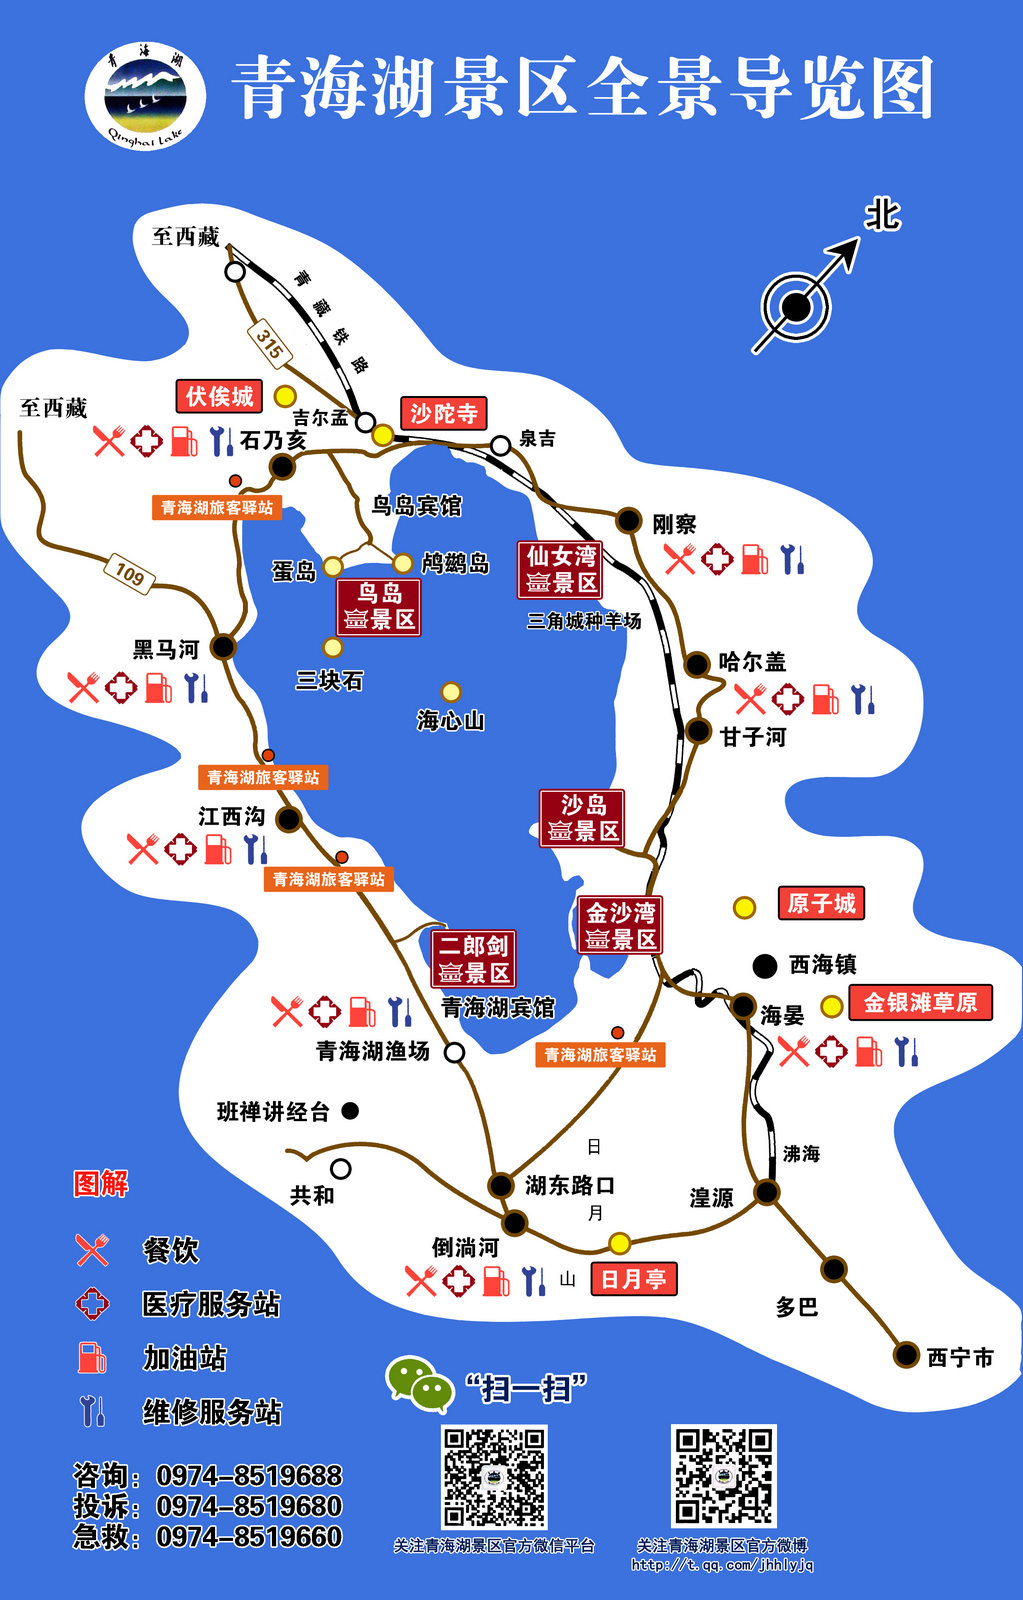 附上青海湖旅游导览图(大图,可打印): 一路阴雨,时间已到17:00,我们